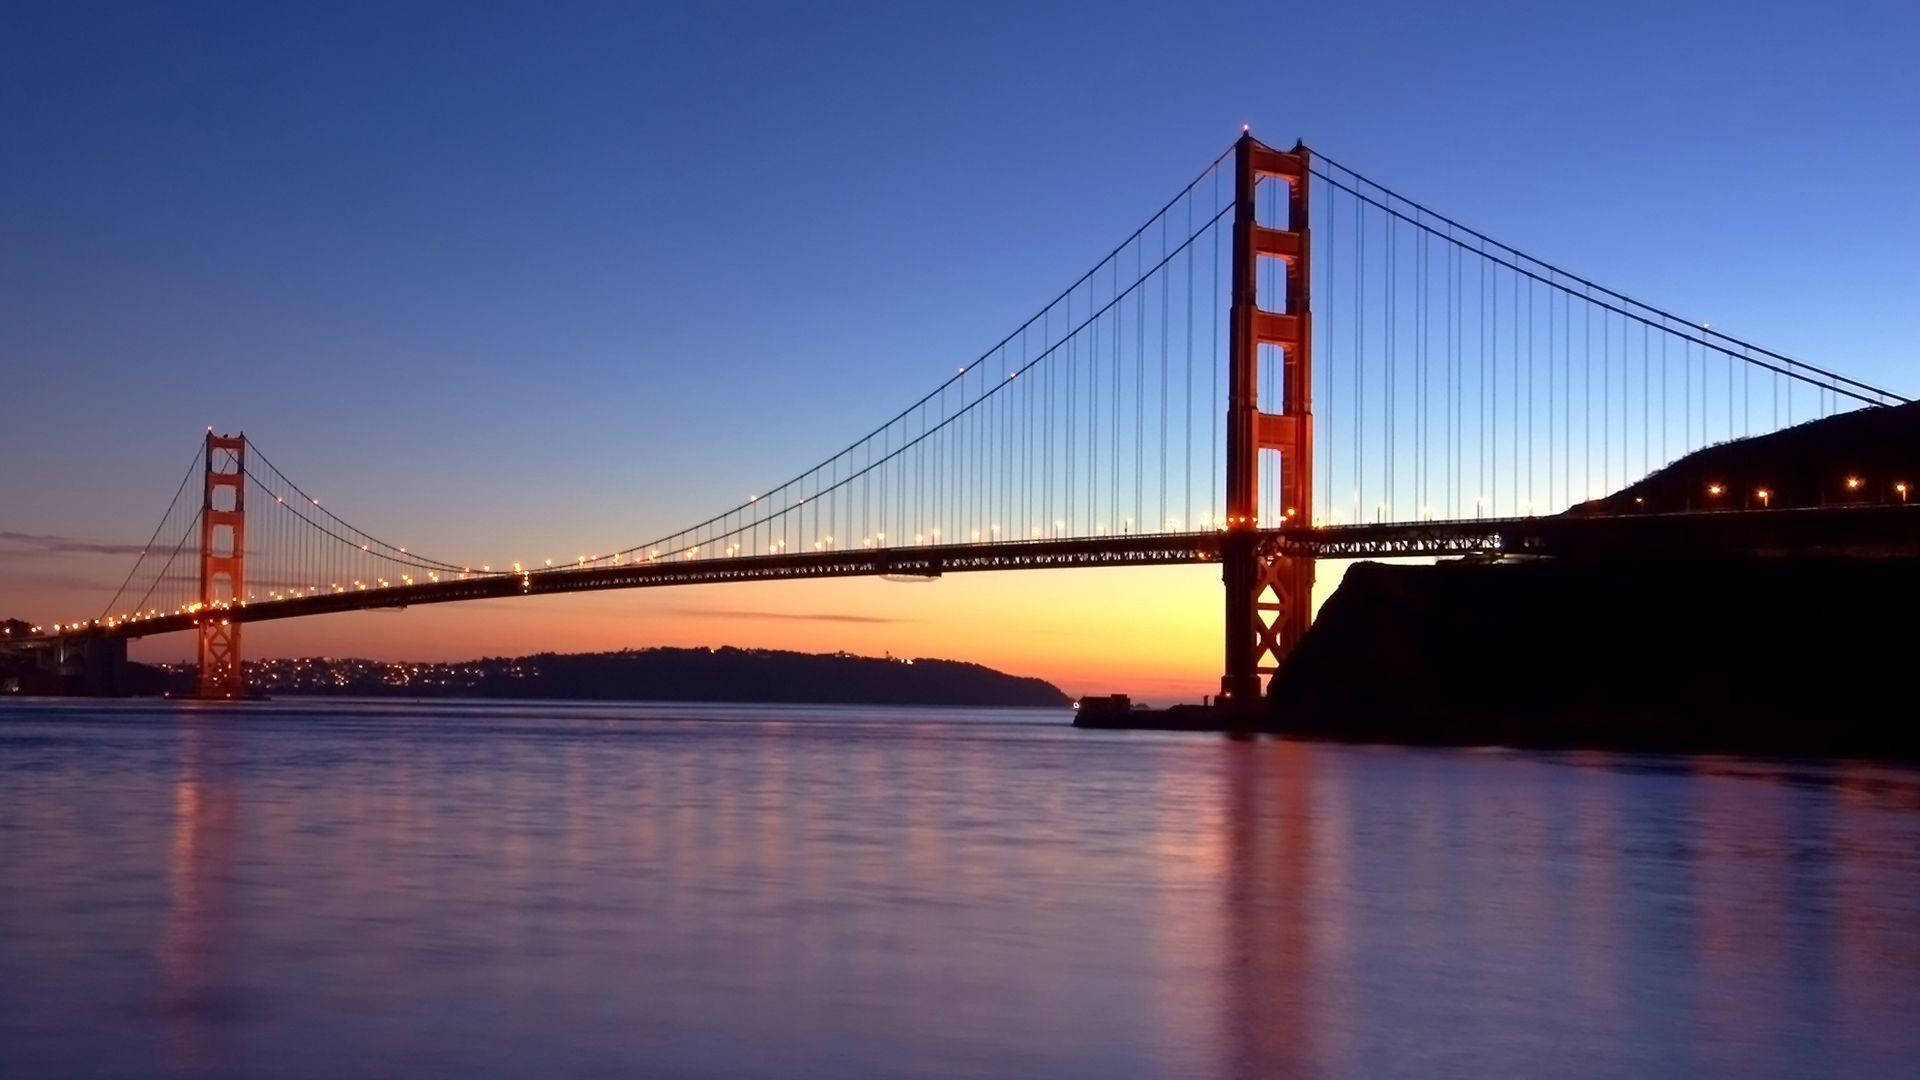 Vistasdel Puente Golden Gate Desde El Agua Fondo de pantalla